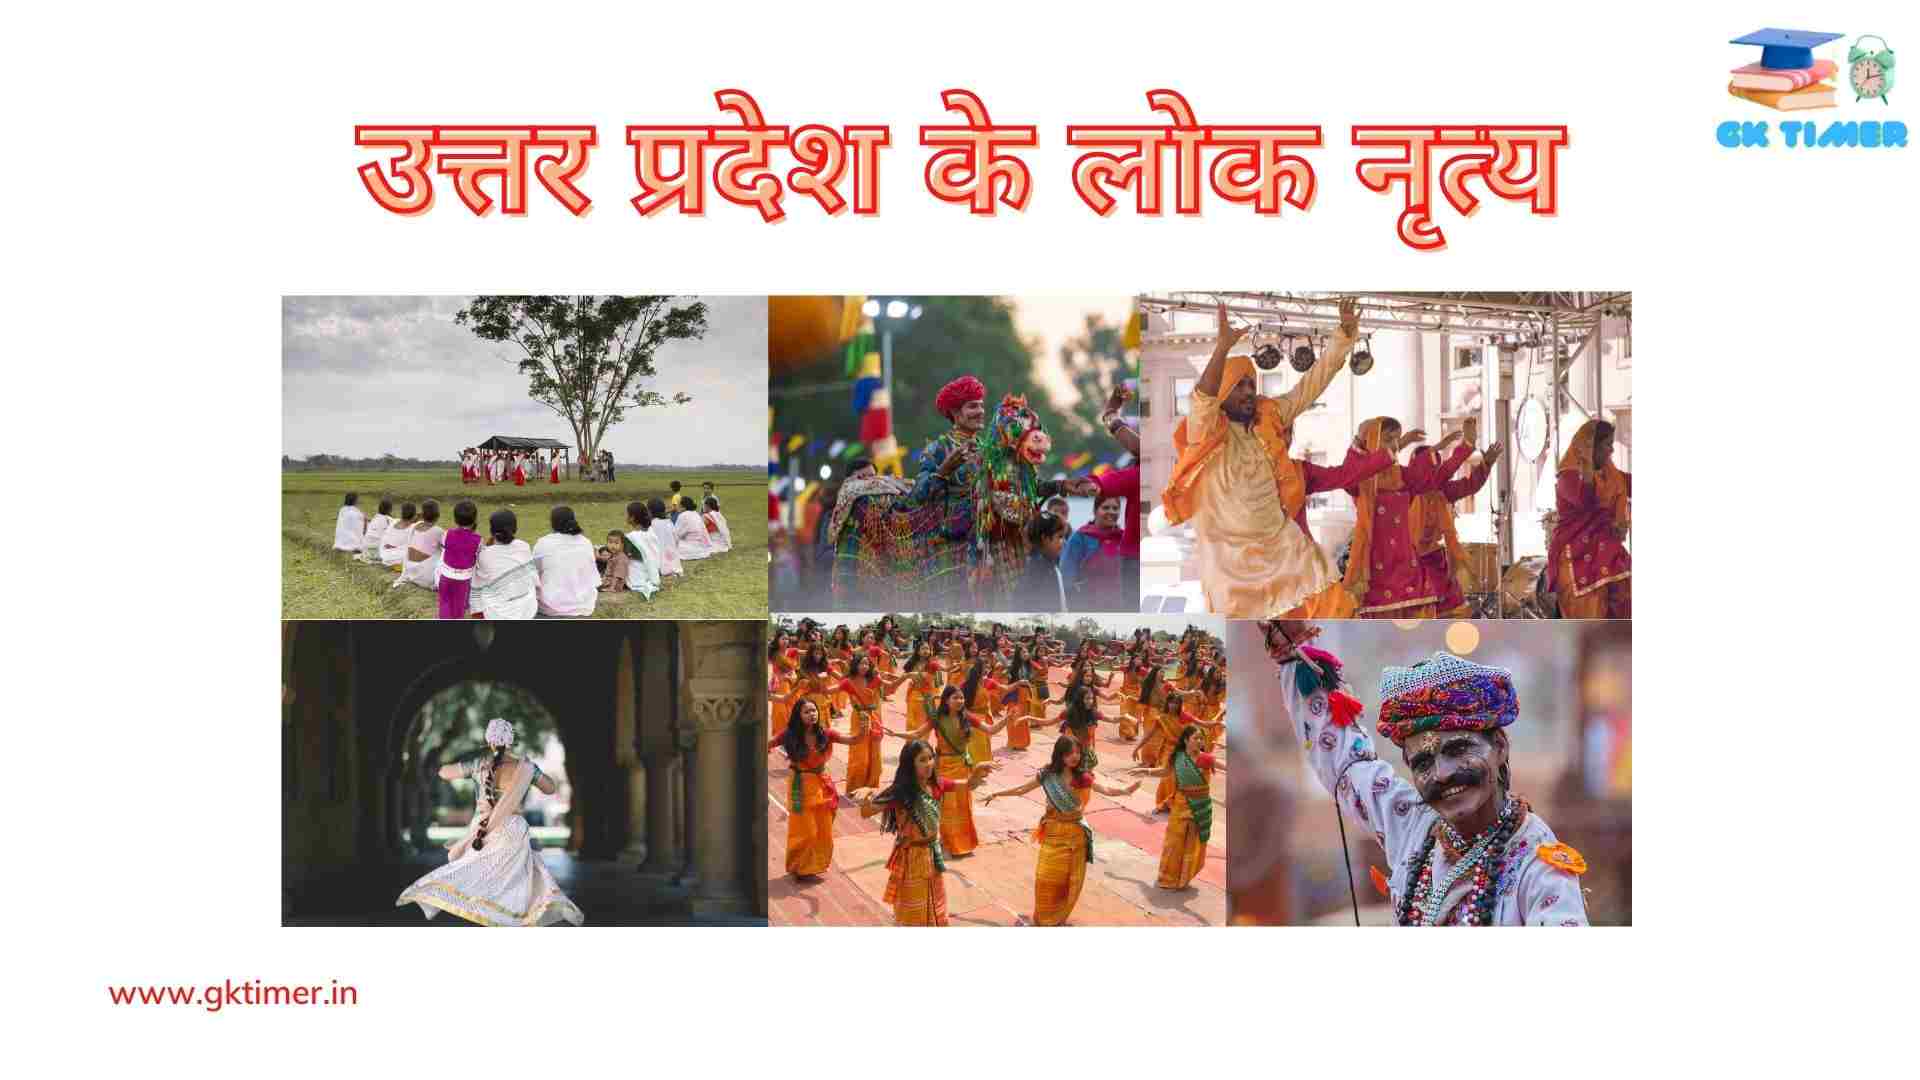 उत्तर प्रदेश के लोकप्रिय लोक नृत्य(चारकुला, ख्याल लोक नृत्य, रासलीला, रामलीला) | Popular Folk Dances of Uttar Pradesh in Hindi